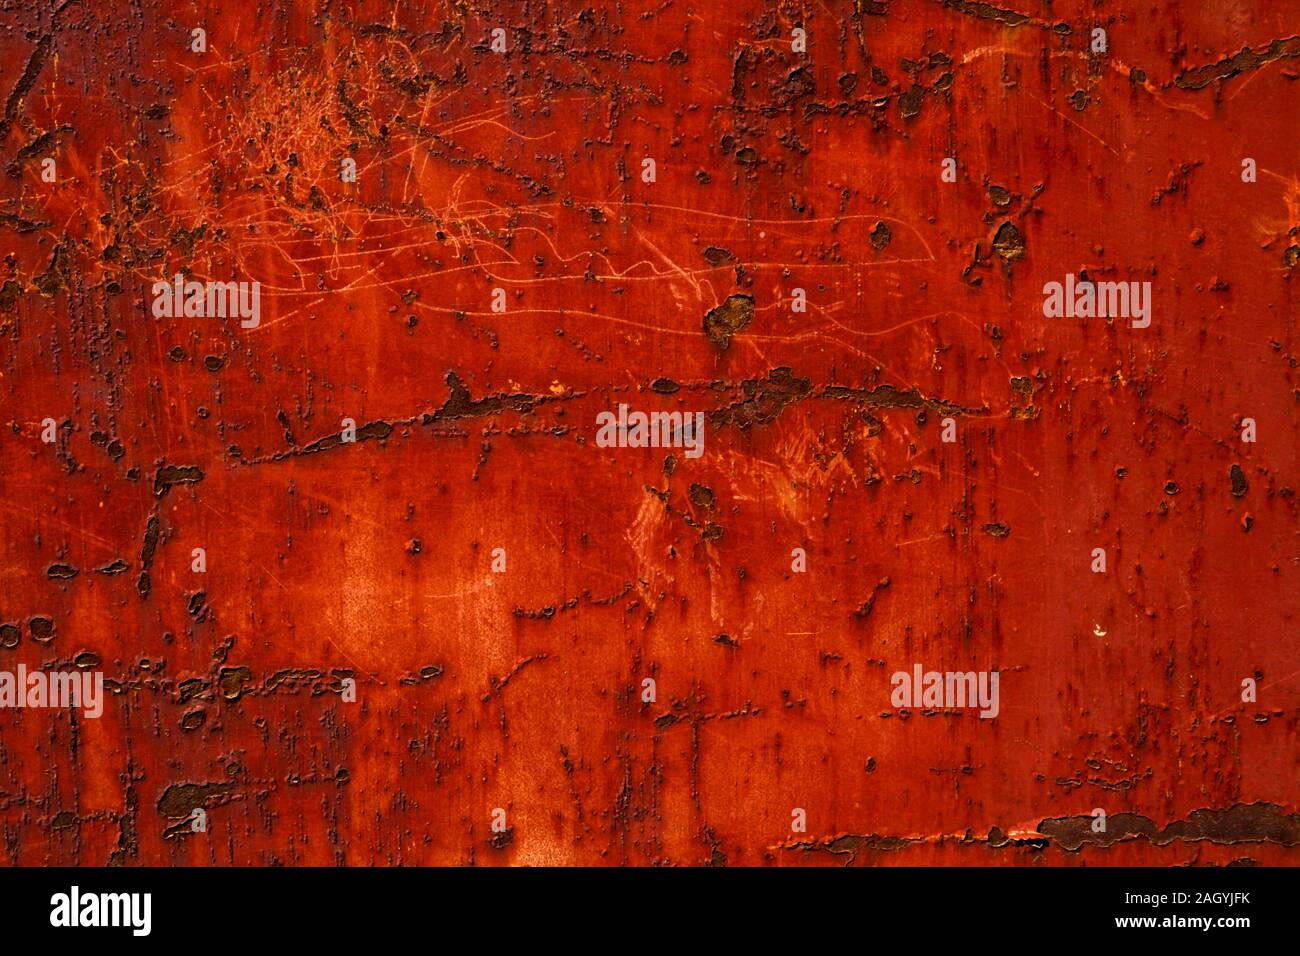 Arrière-plan de surface brûlée red hot Banque D'Images